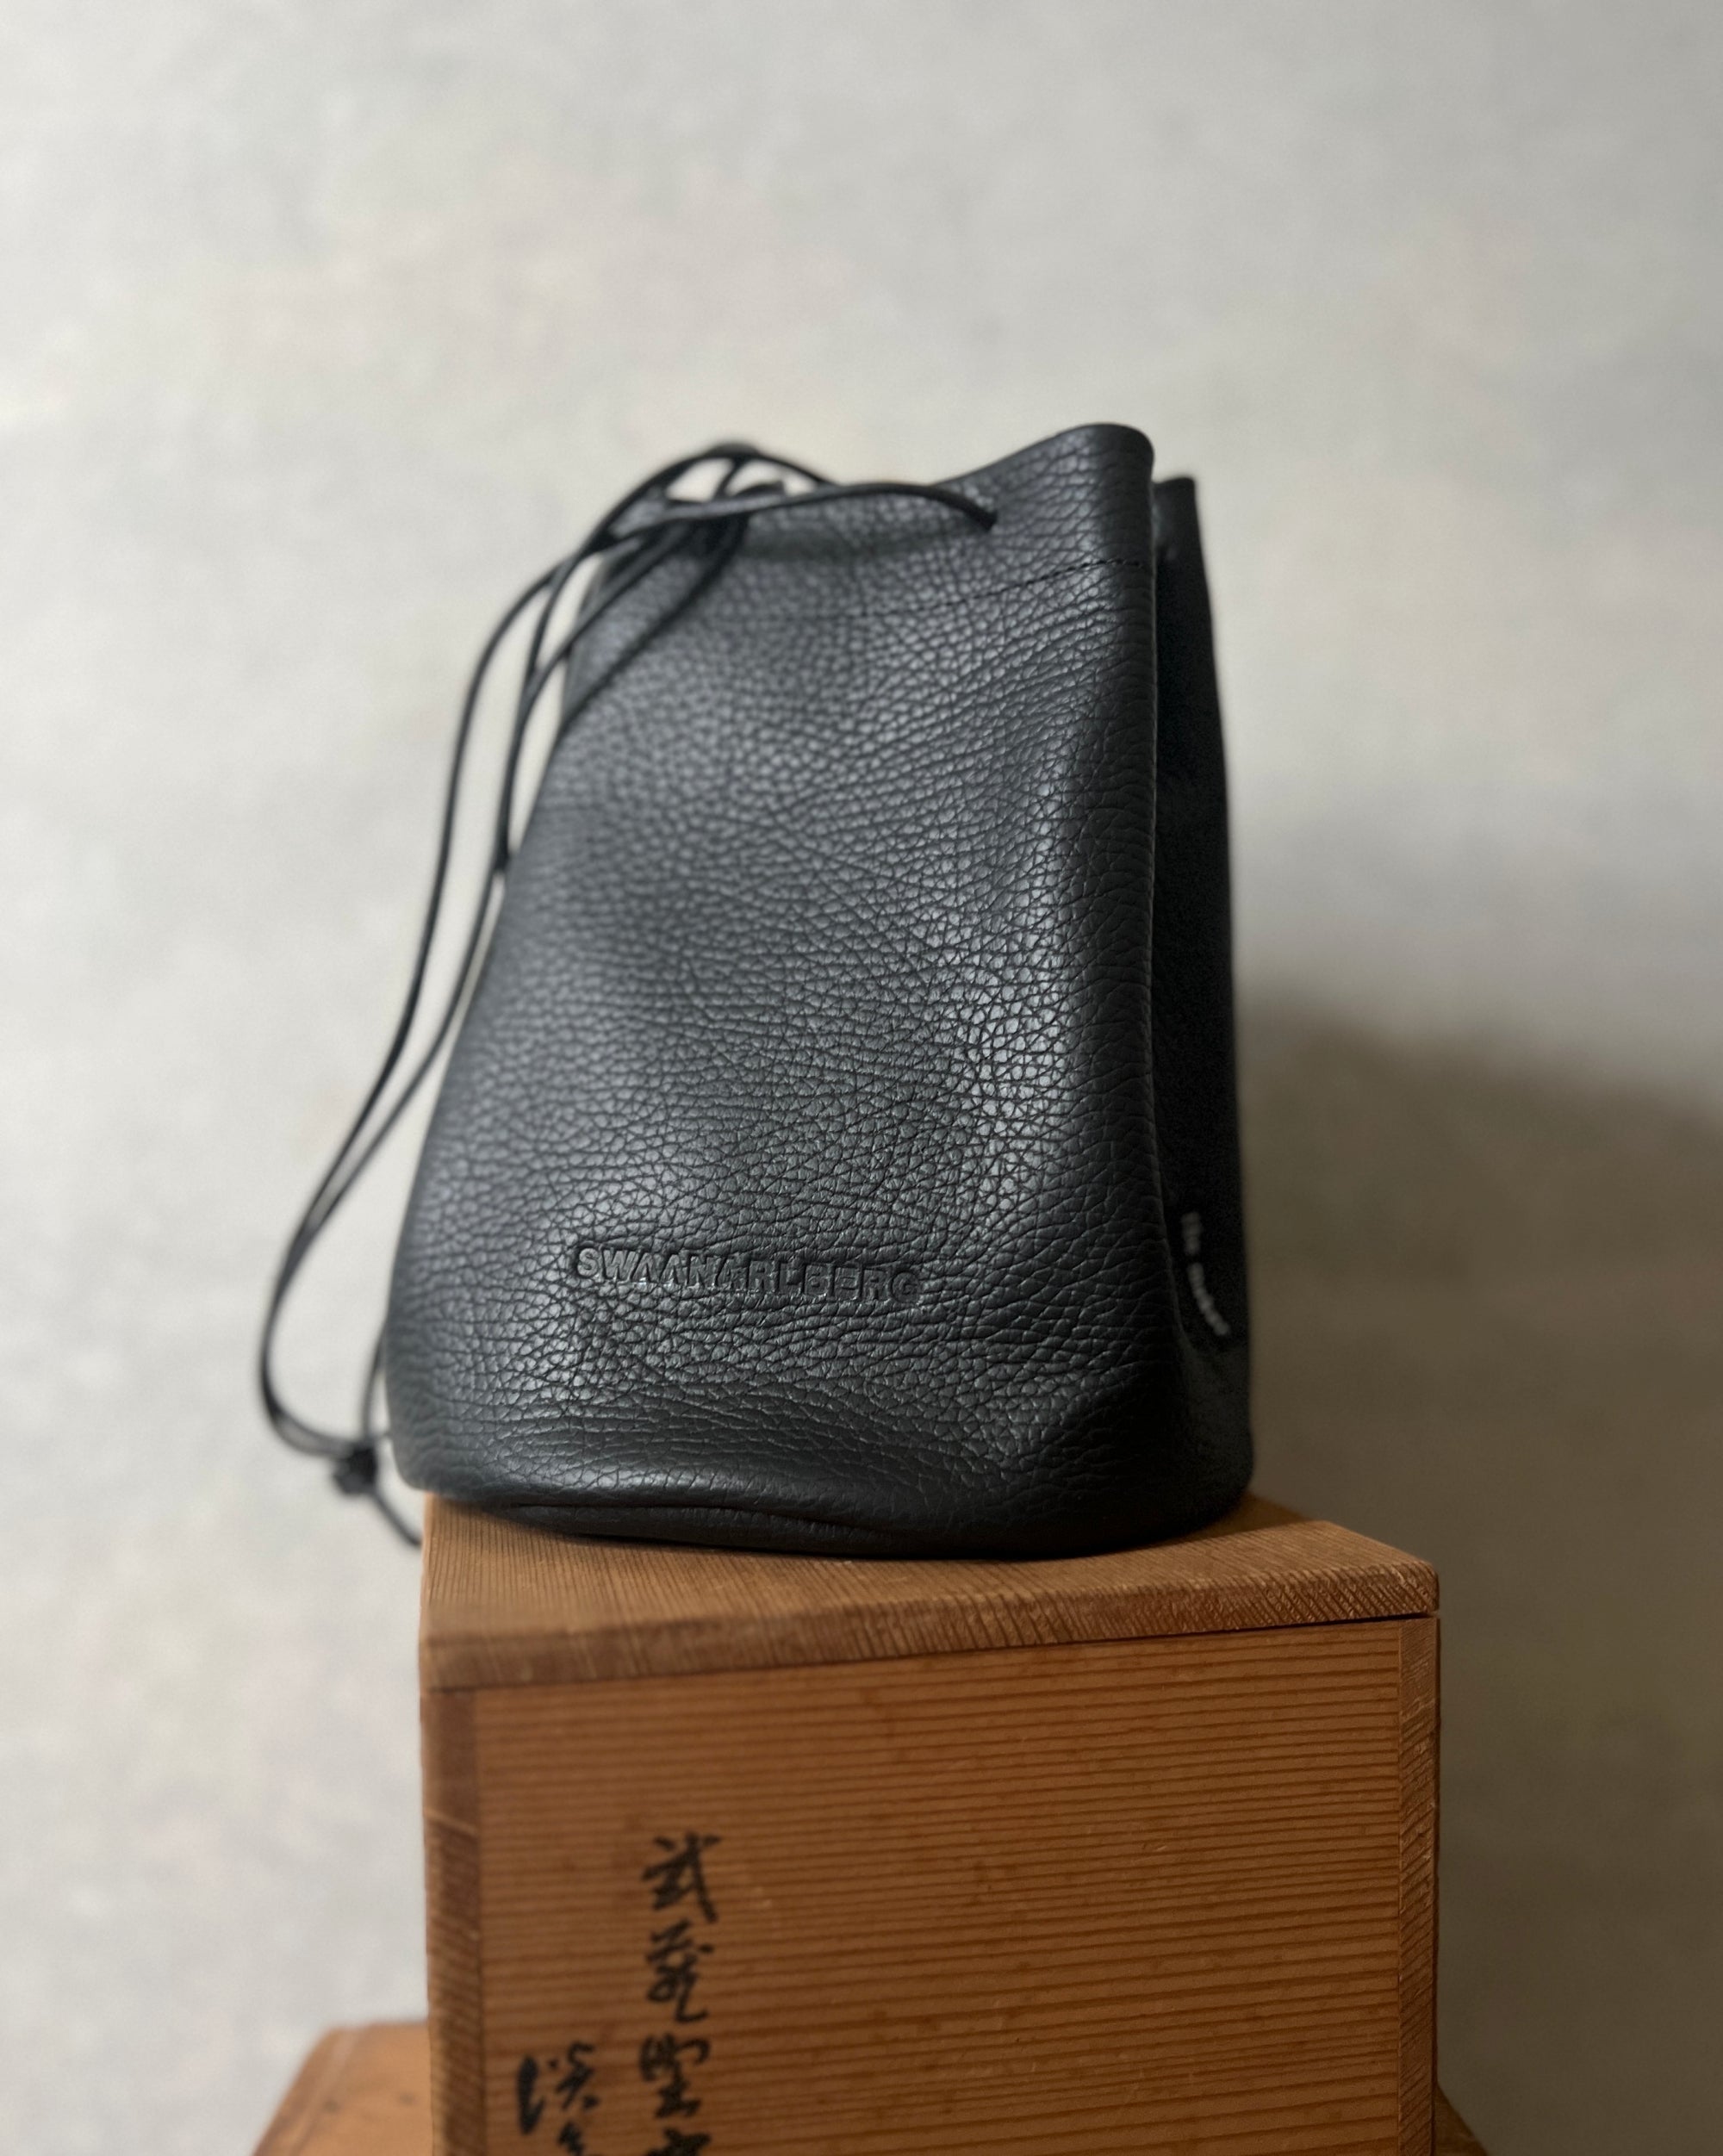 Swaanarlberg japanese leather bag, sewn in Spain